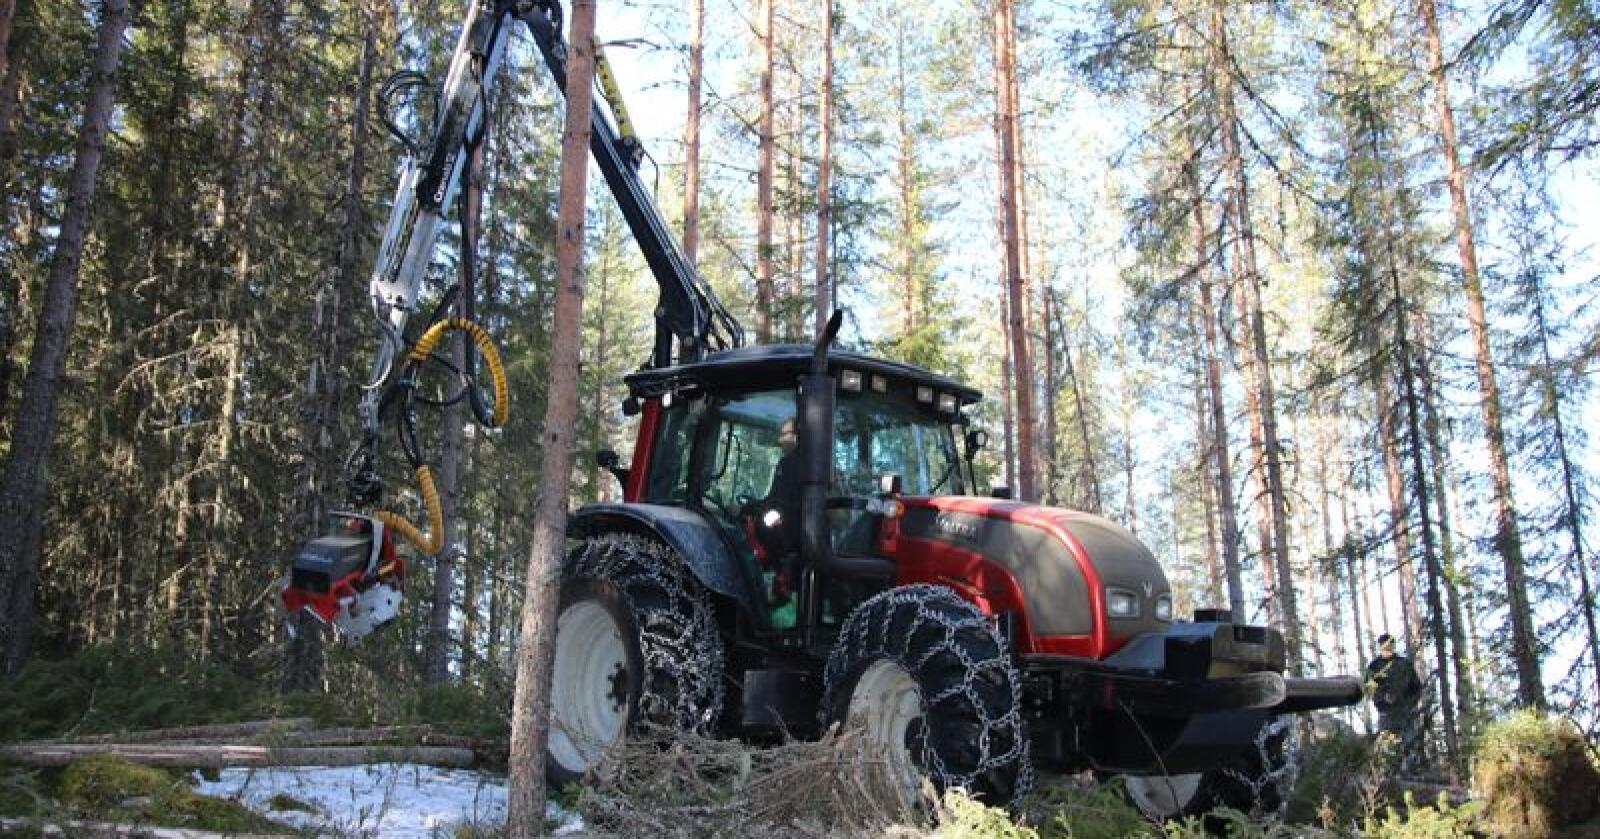 Med ei egen demonstrajonsløype hvor kunden kan få prøvekjøre skogstraktor- og redskap i sitt rette element, skal Läntmannen Maskins nye Kompetansesenter Skog gi ny giv til landbrukstraktoren som skogsmaskin. (Foto: Lars Raaen)